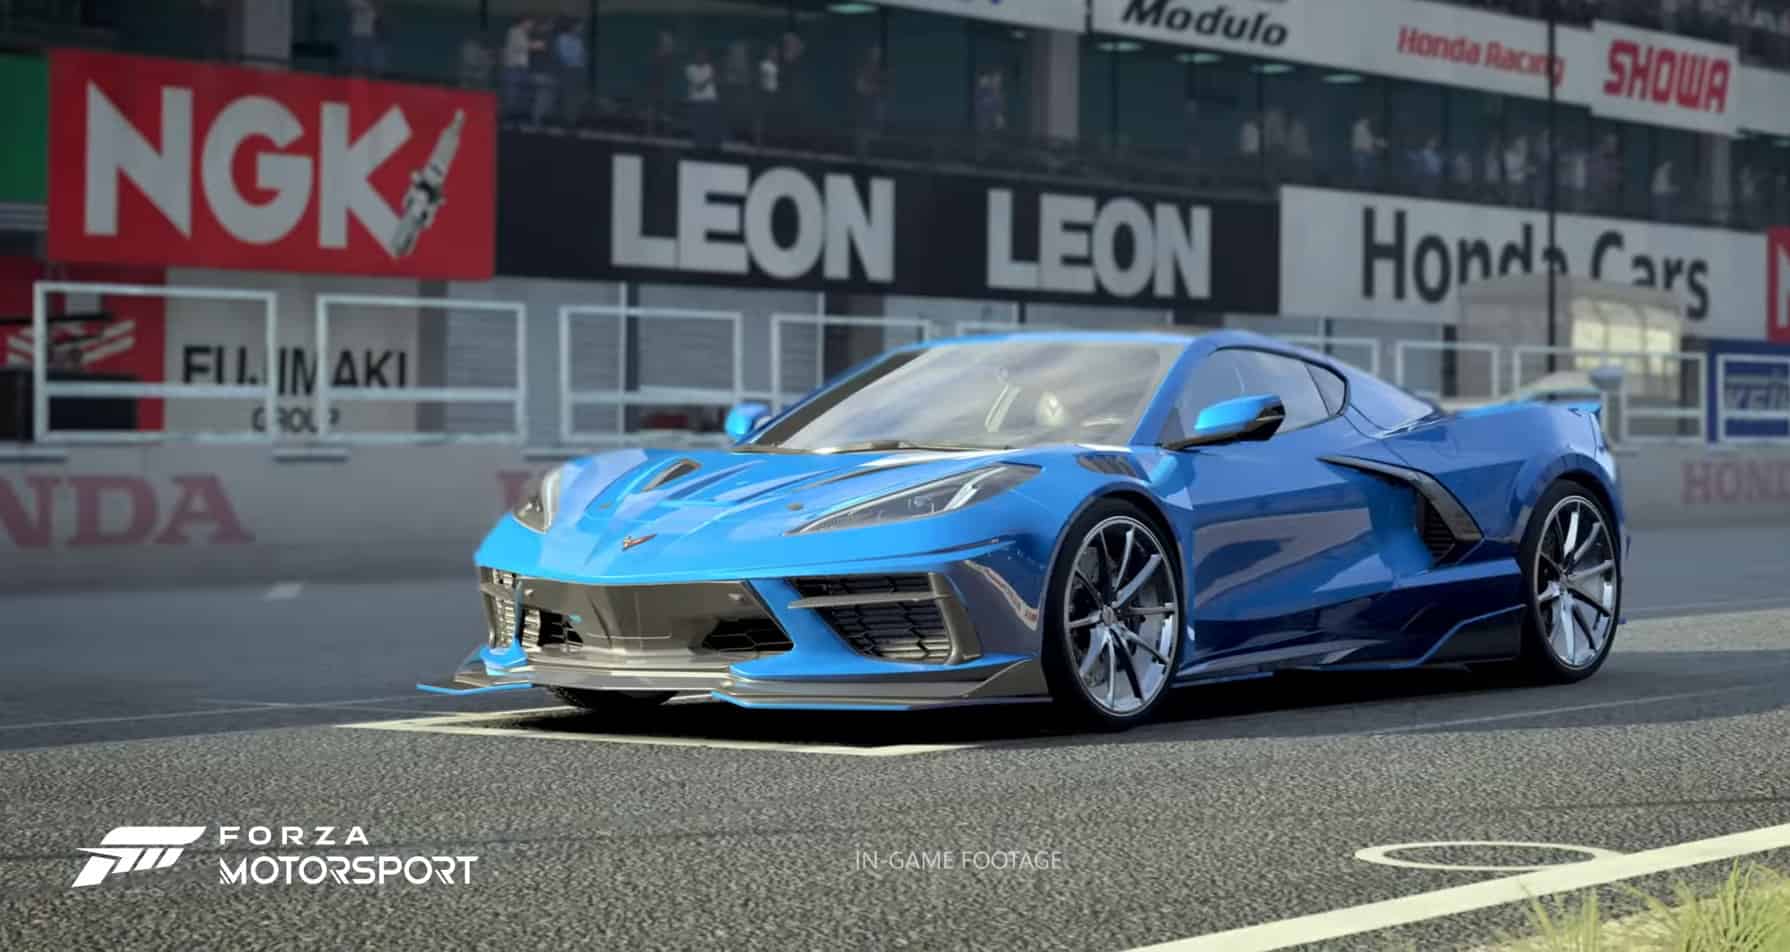 Forza Motorsport nos muestra sus requisitos mínimos y recomendados para PC  (23/08/2023) - Vandal